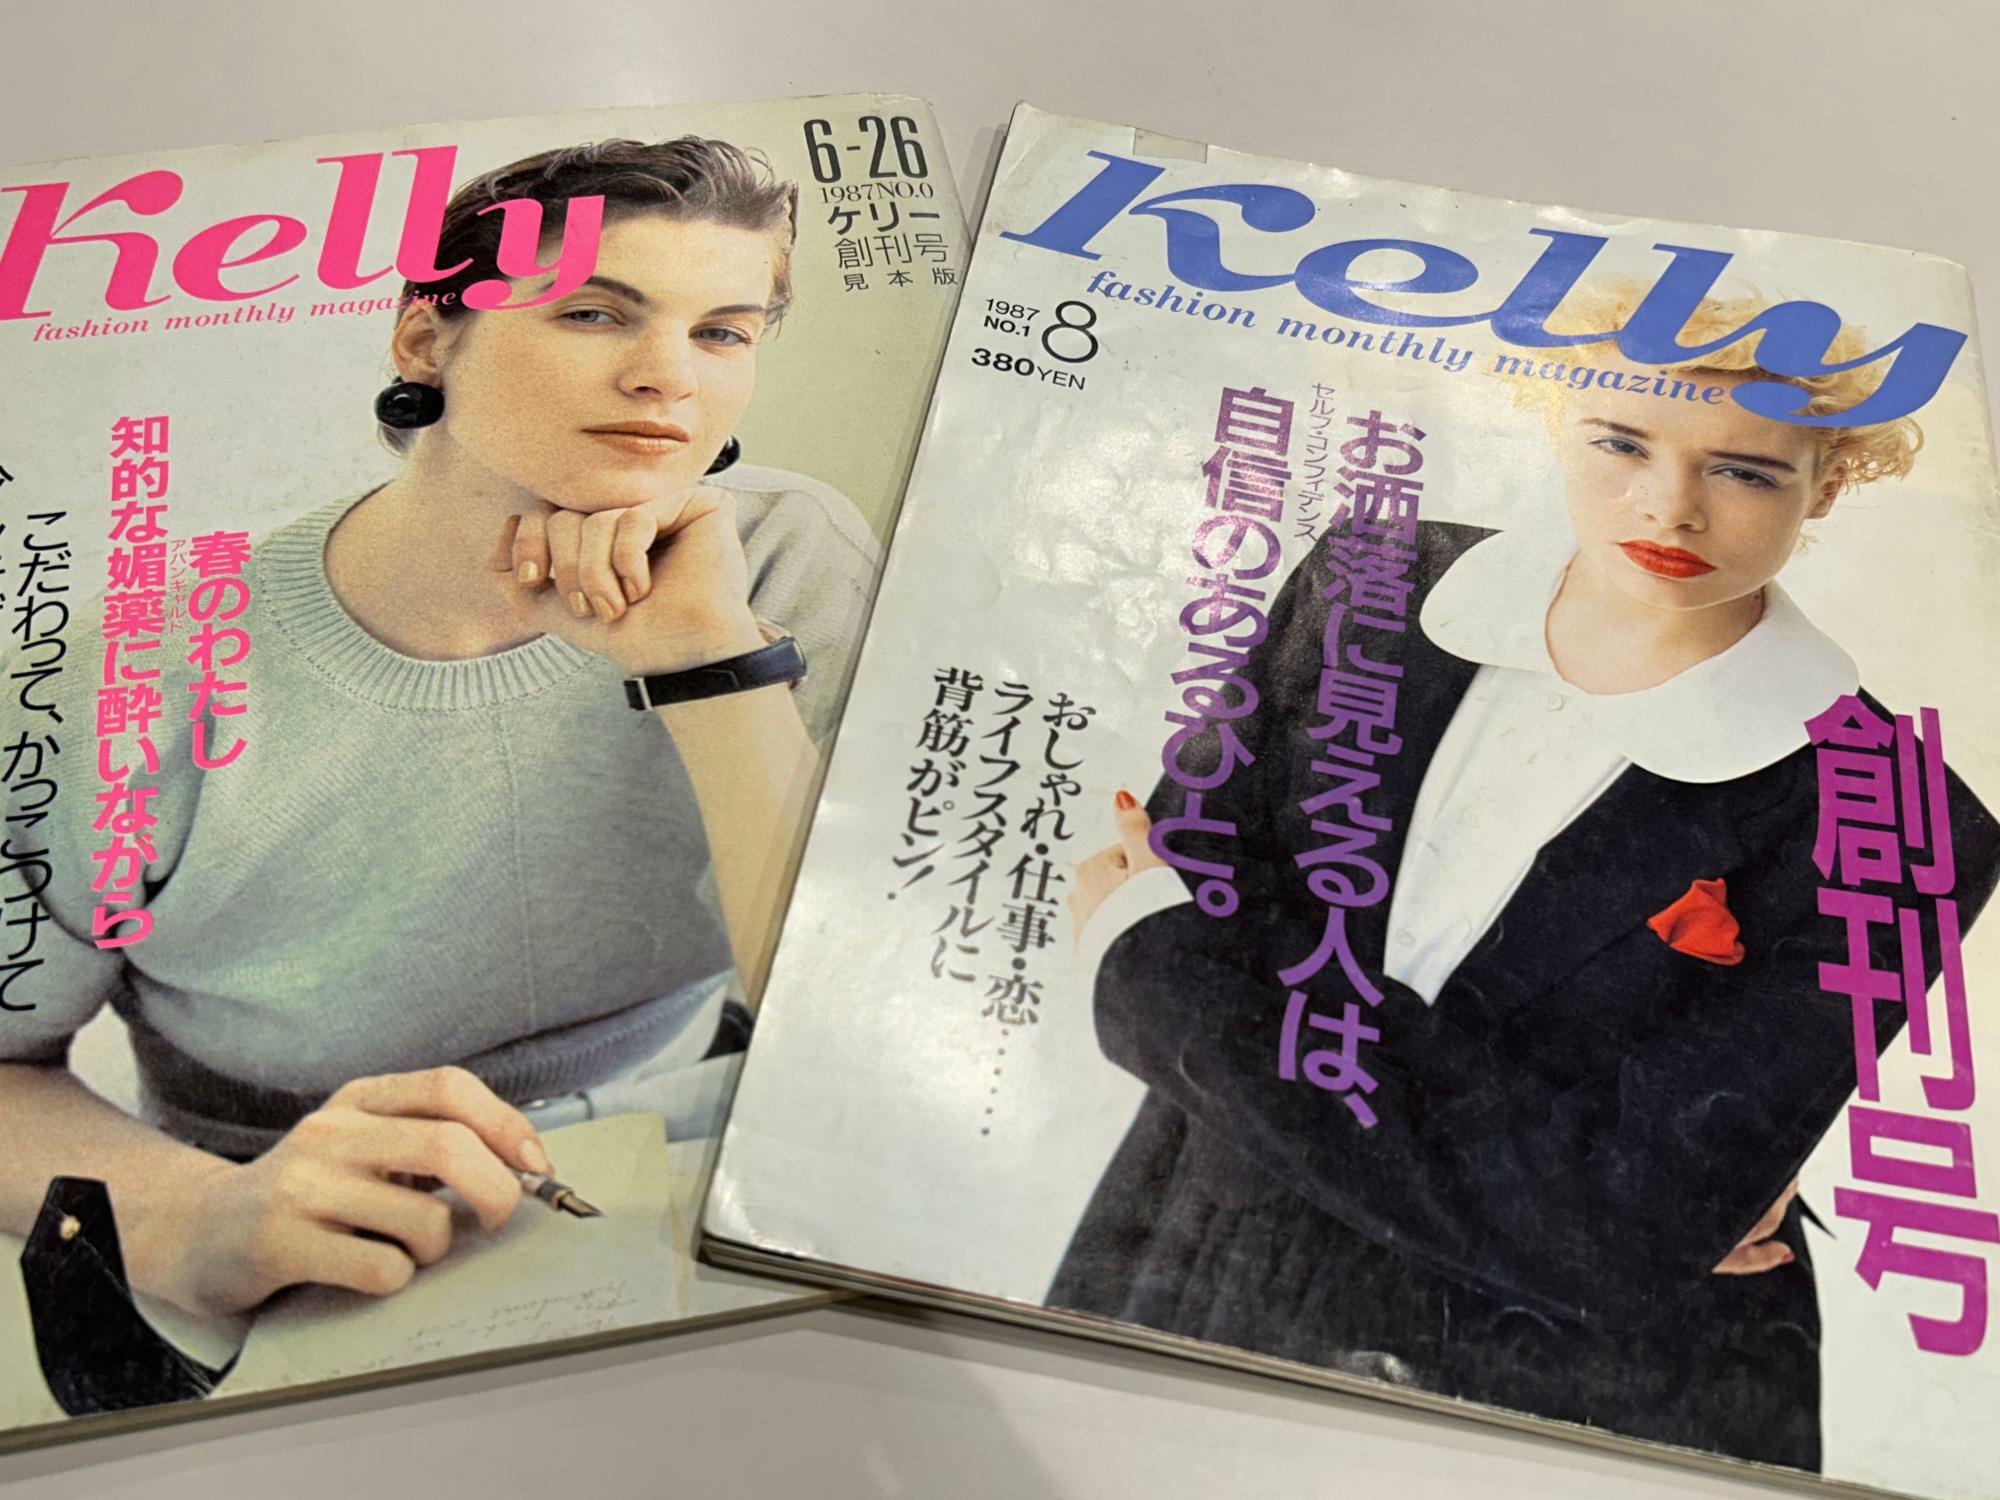 『ケリー』創刊号（右）は1987年8月号。左は創刊見本版。東京・マガジンハウスの編集者らが誌面制作を担当していた。創刊号の部数は非公表だが藤井さんいわく「数万部」とのこと